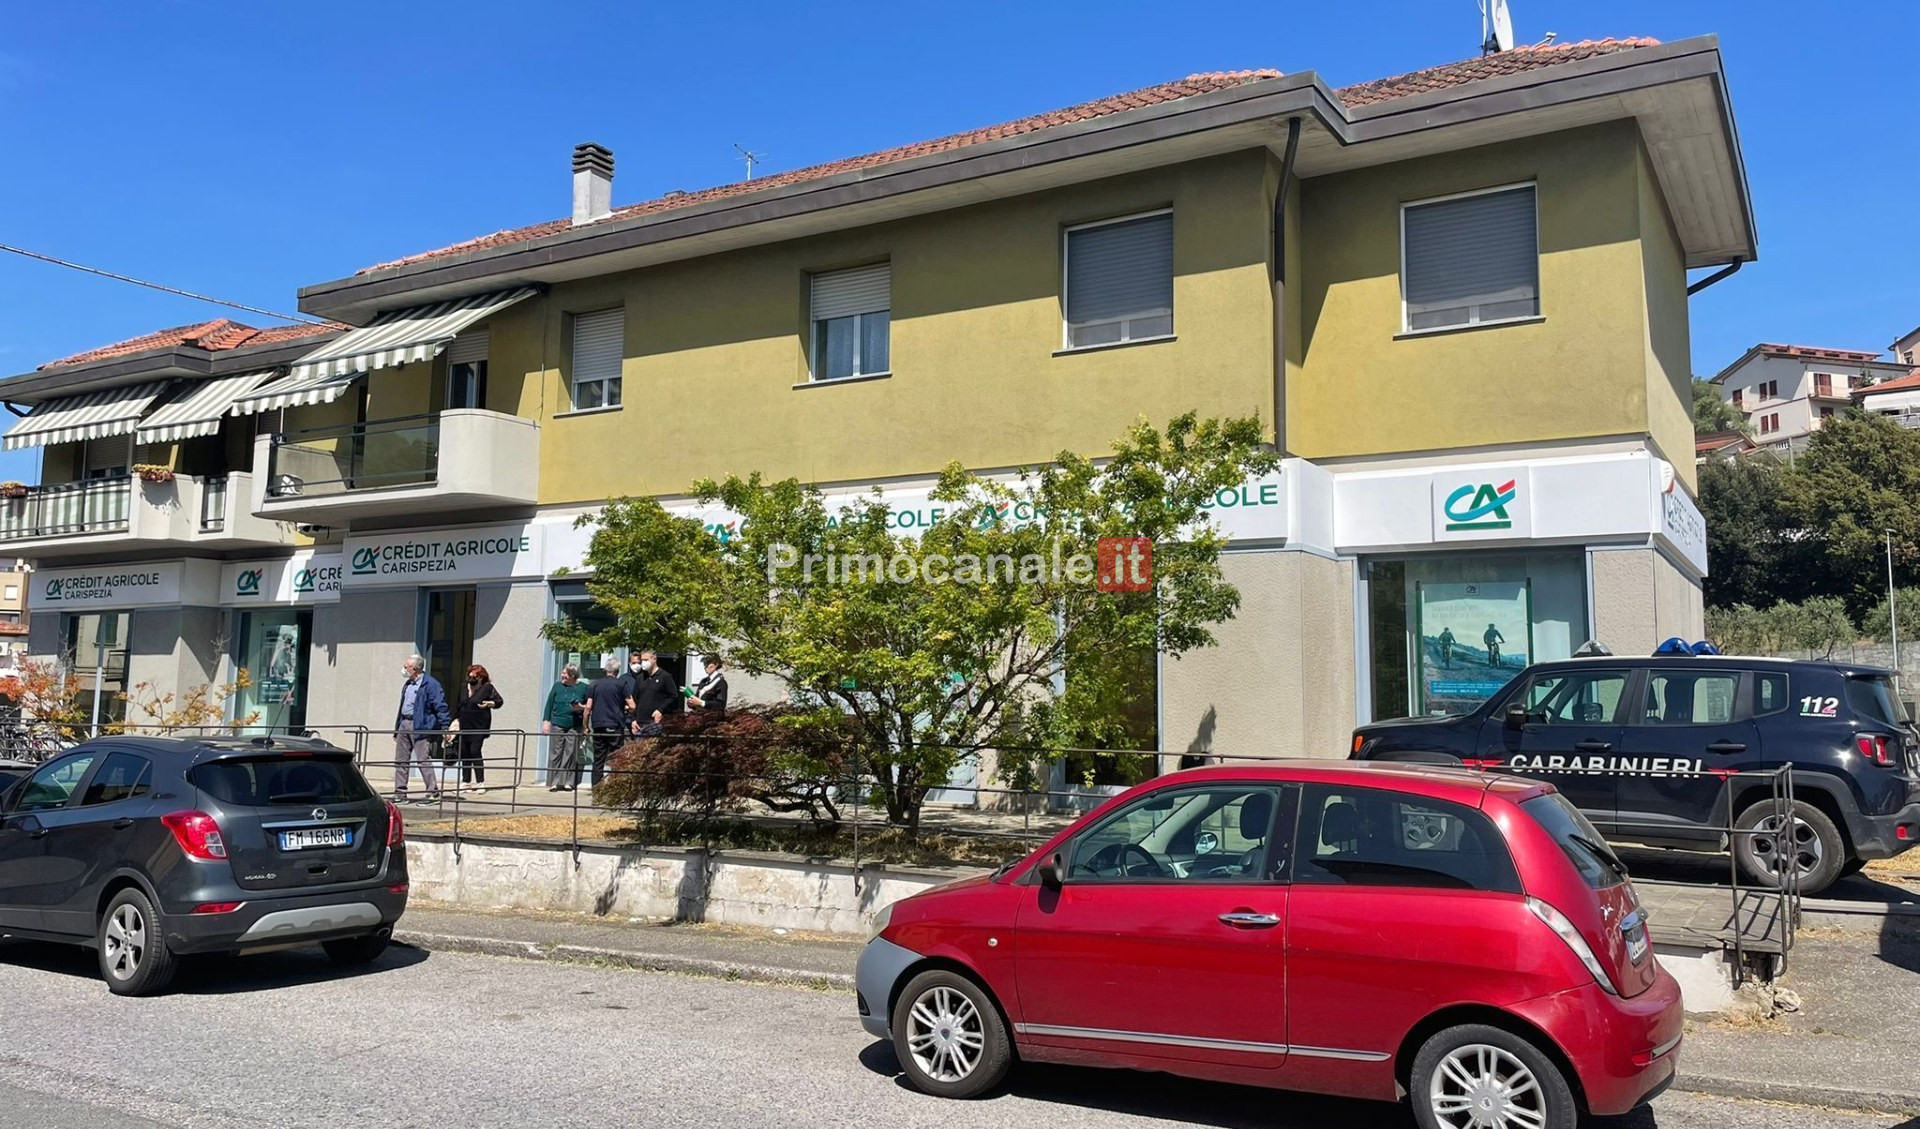 Rapina in banca con ostaggi a Vezzano Ligure: si cercano i quattro banditi